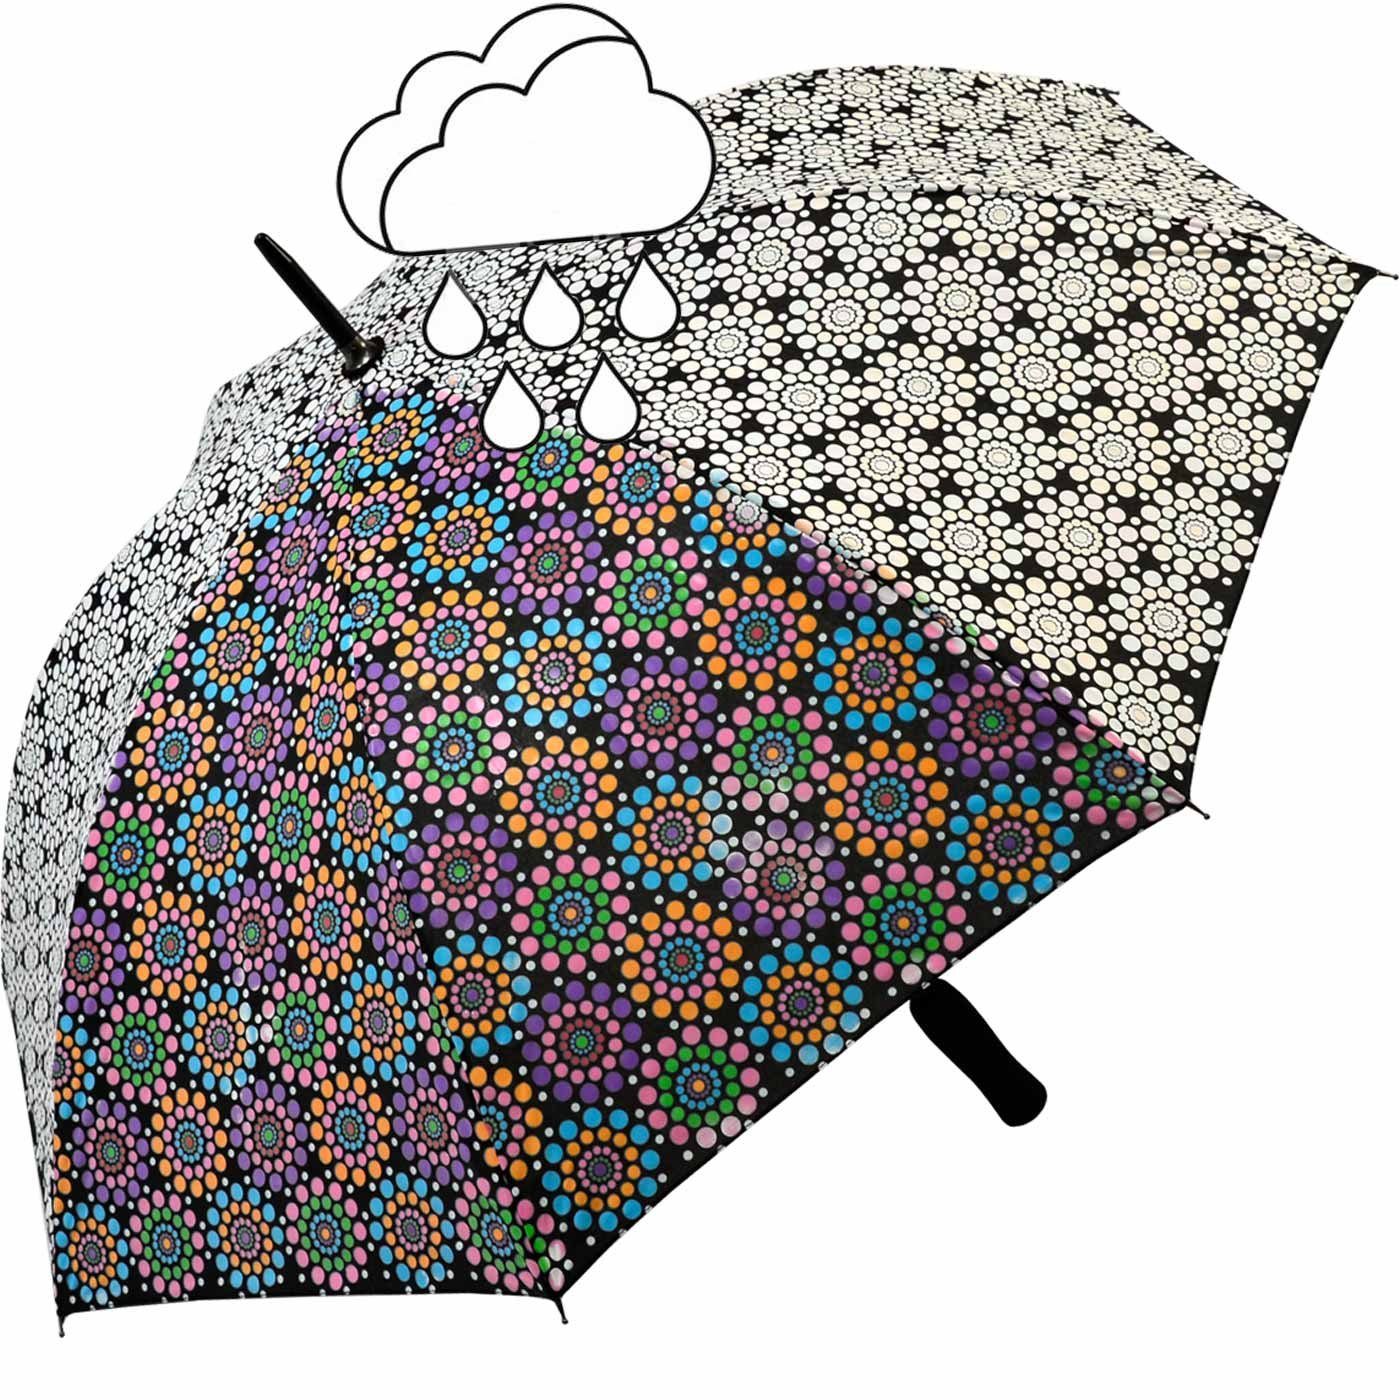 Impliva Langregenschirm Wetprint Farbwechsel bei wird Nässe - sein wenn Schirm wahres Gesicht nass er der zeigt Blumen